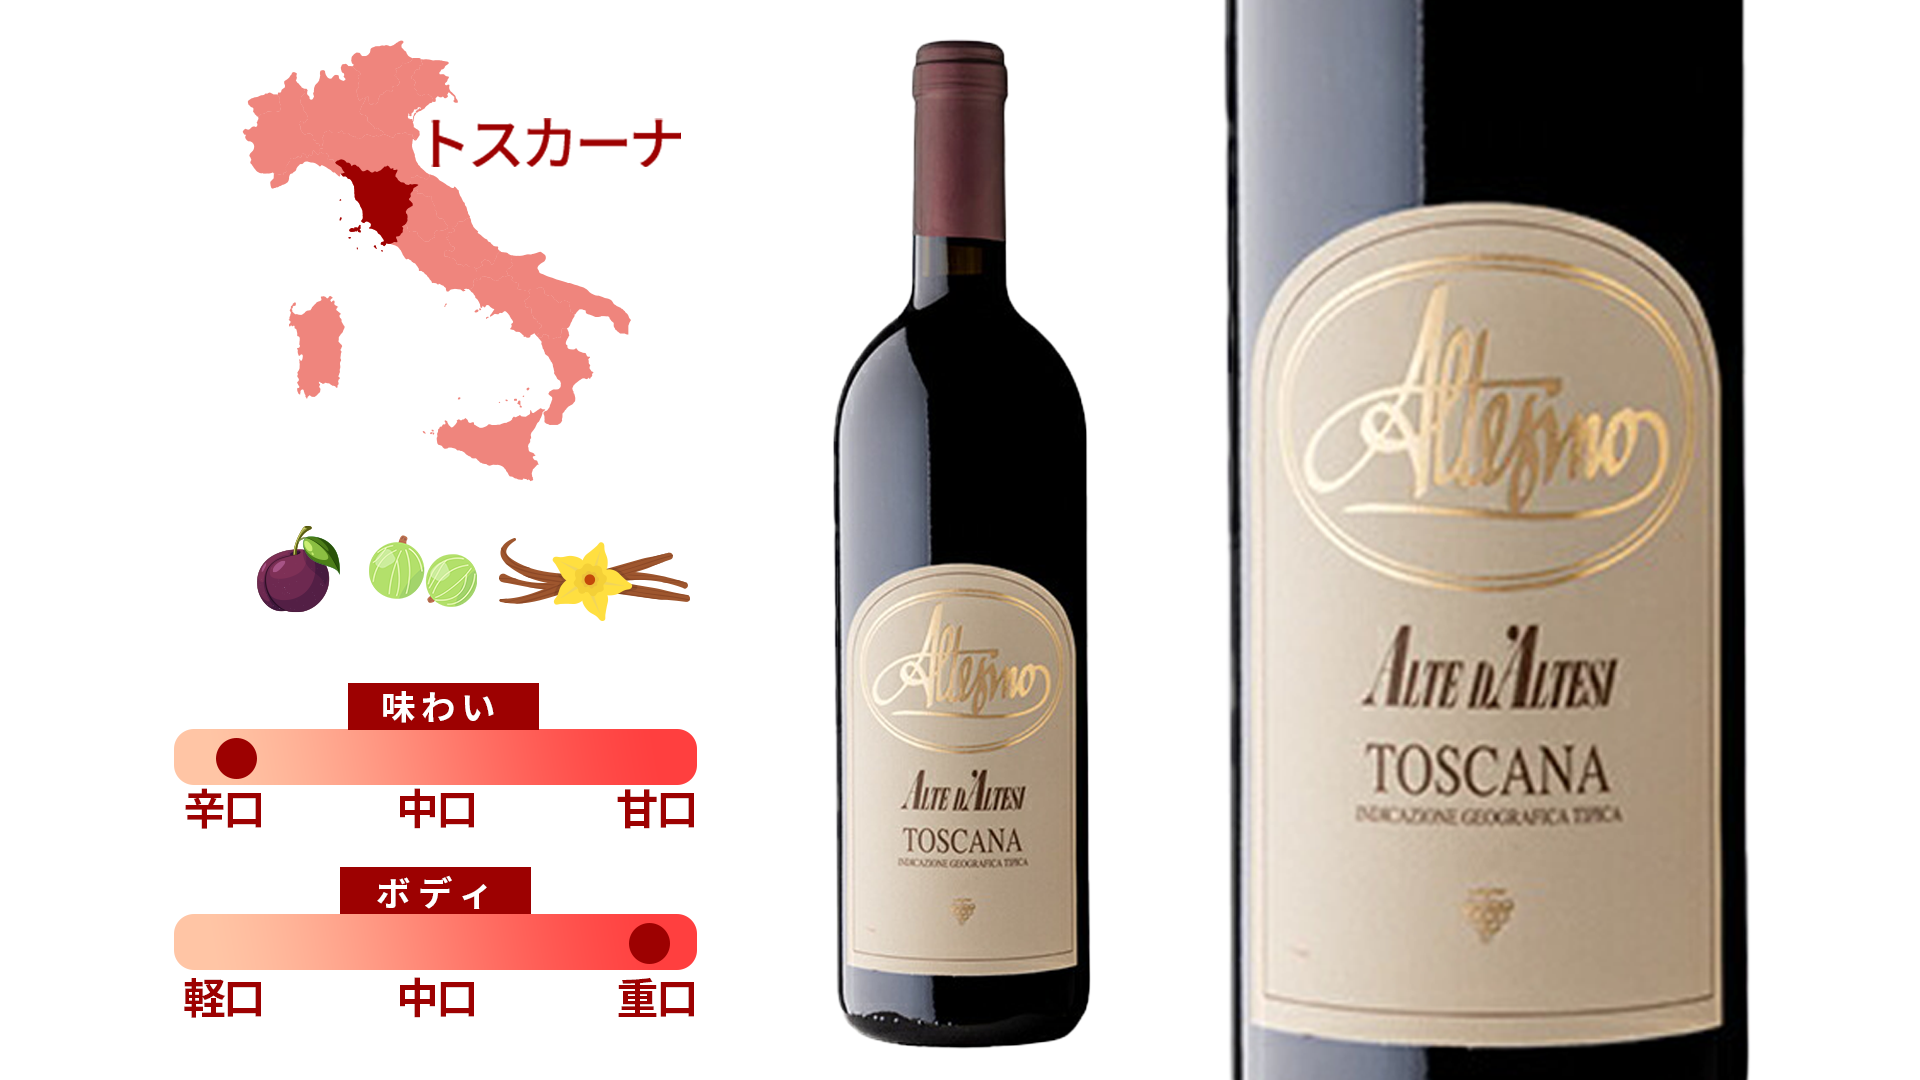 「アルテジーノ」の世界をたっぷり味わう厳選赤ワイン4本セット